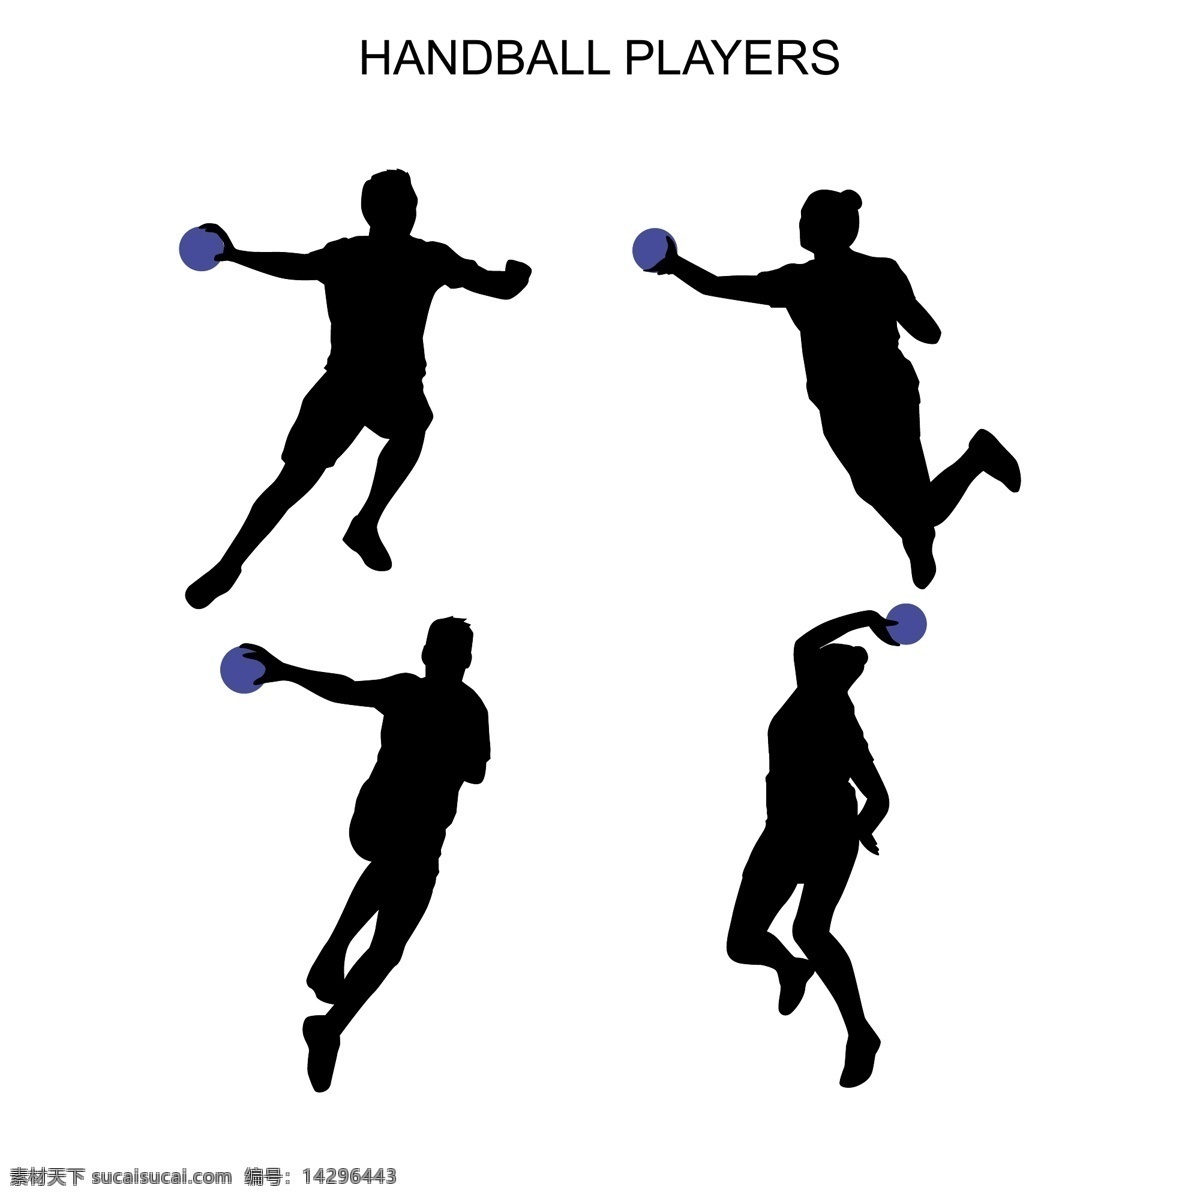 手球 运动员 剪影 手球运动剪影 手球运动员 手球剪影 手球运动 handball 共享设计矢量 人物图库